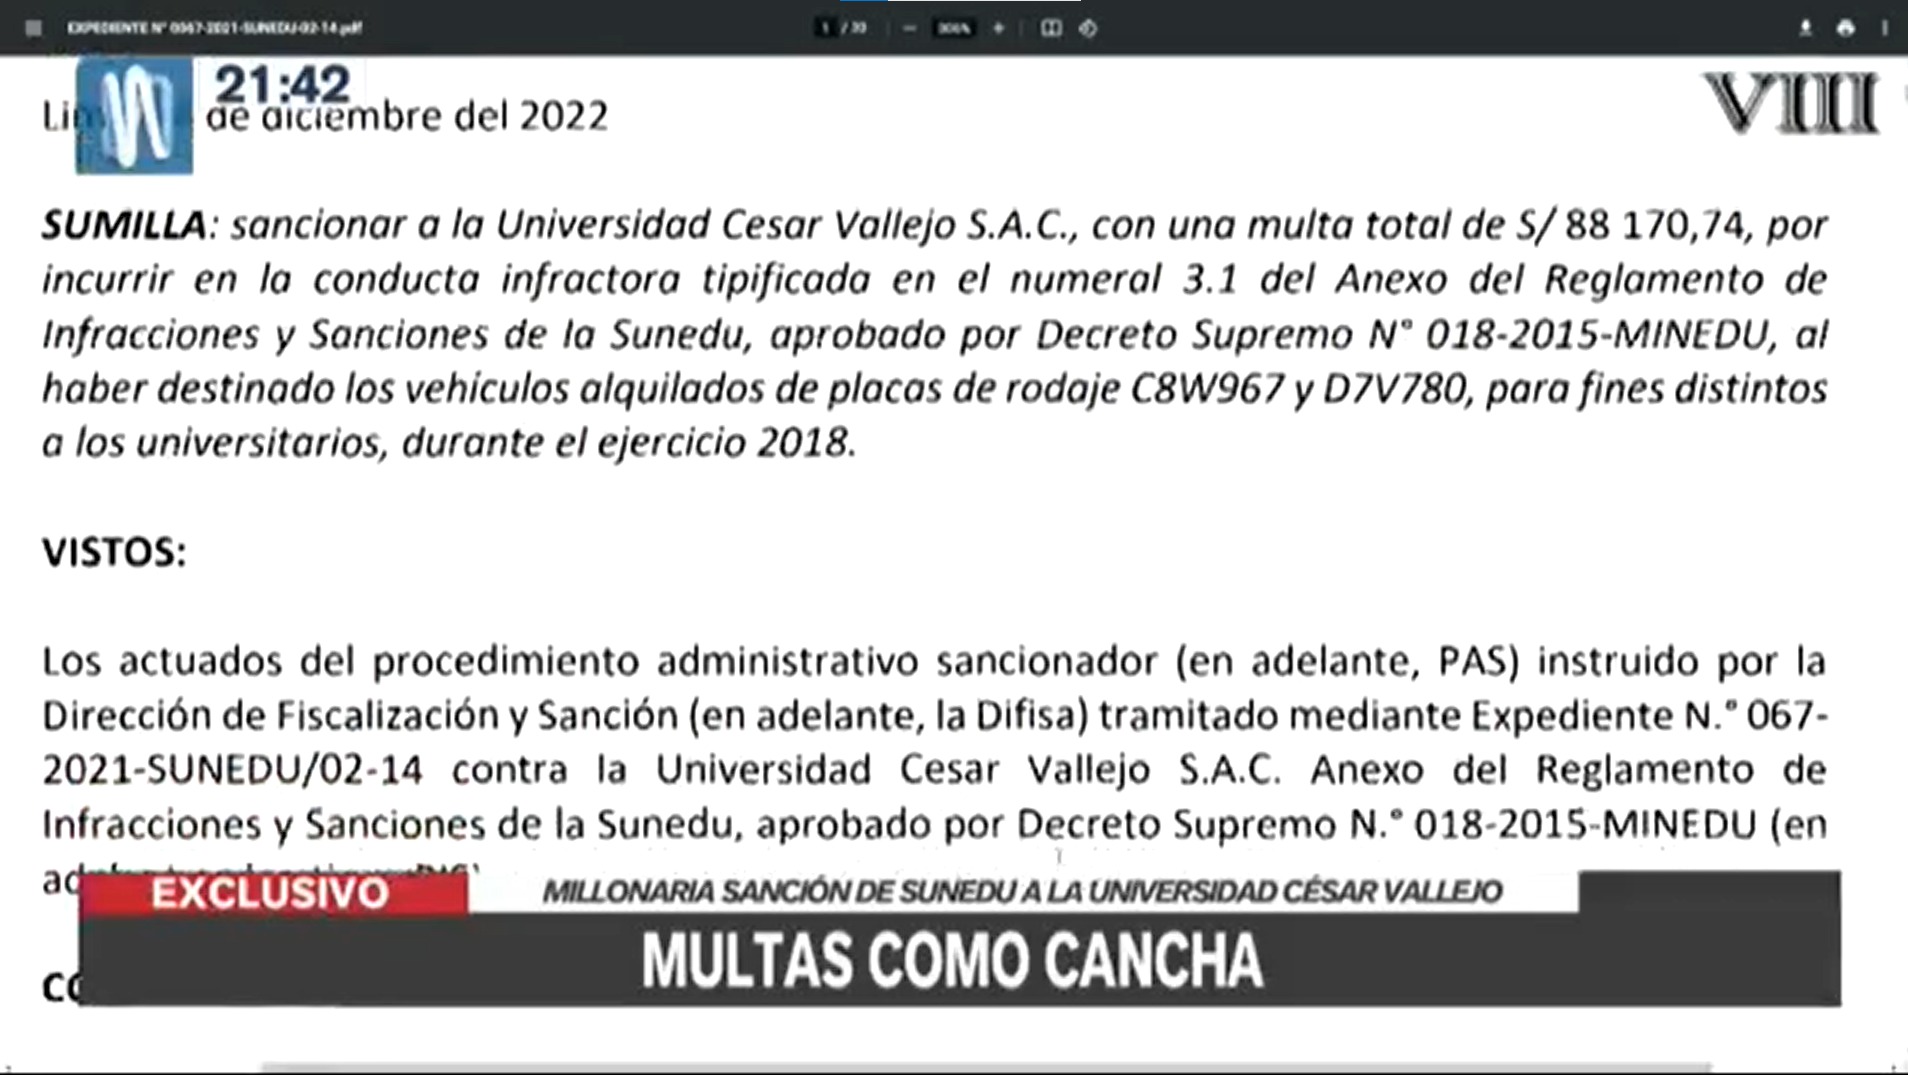 Las multas por más de S/ 4 millones contra la universidad de César Acuña